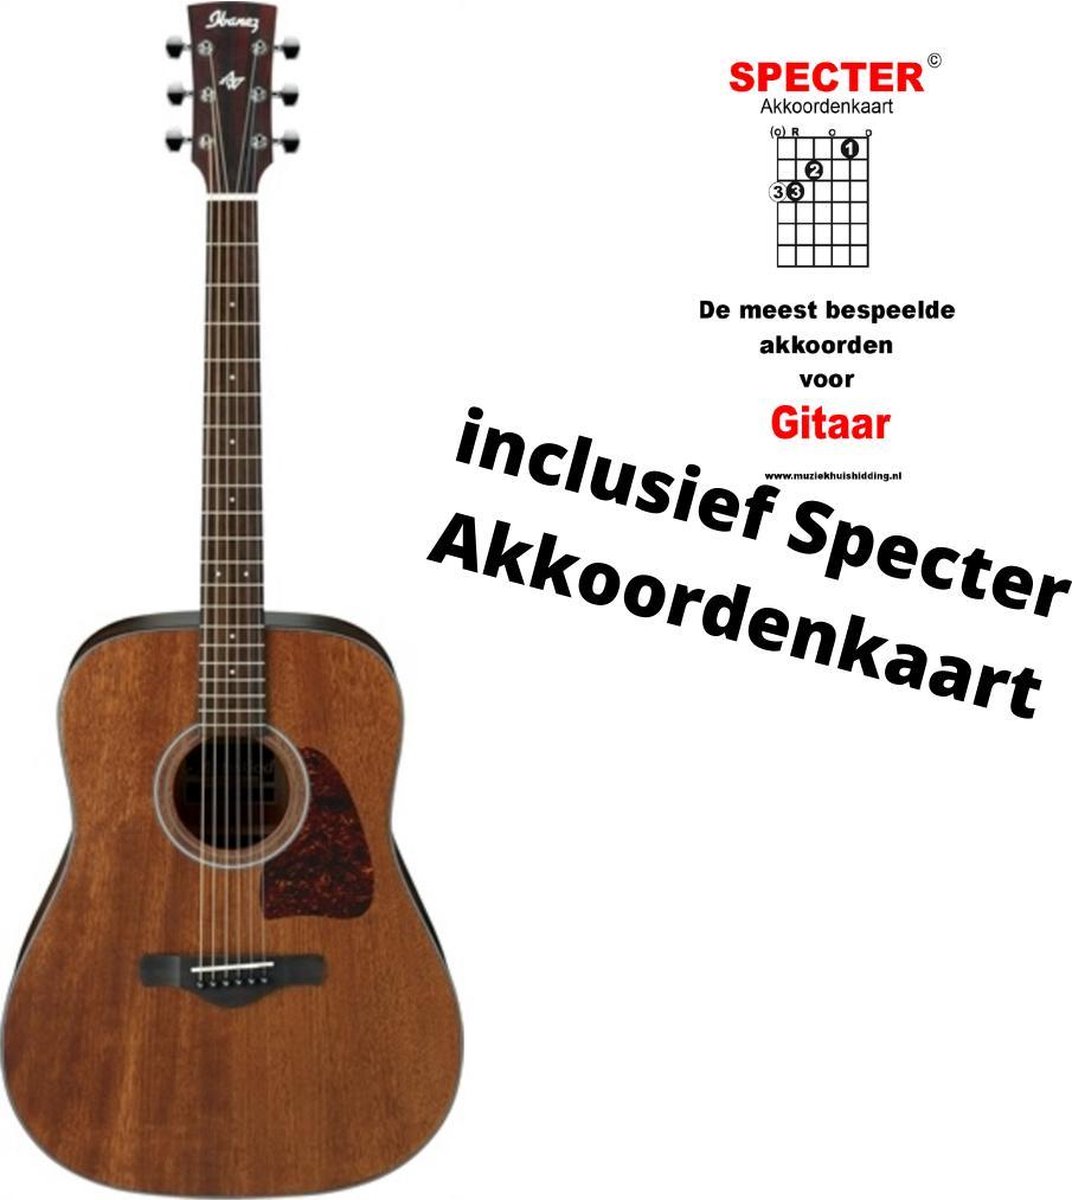 Ibanez akoestische gitaar aw54opn met Specter Akkoordenkaart